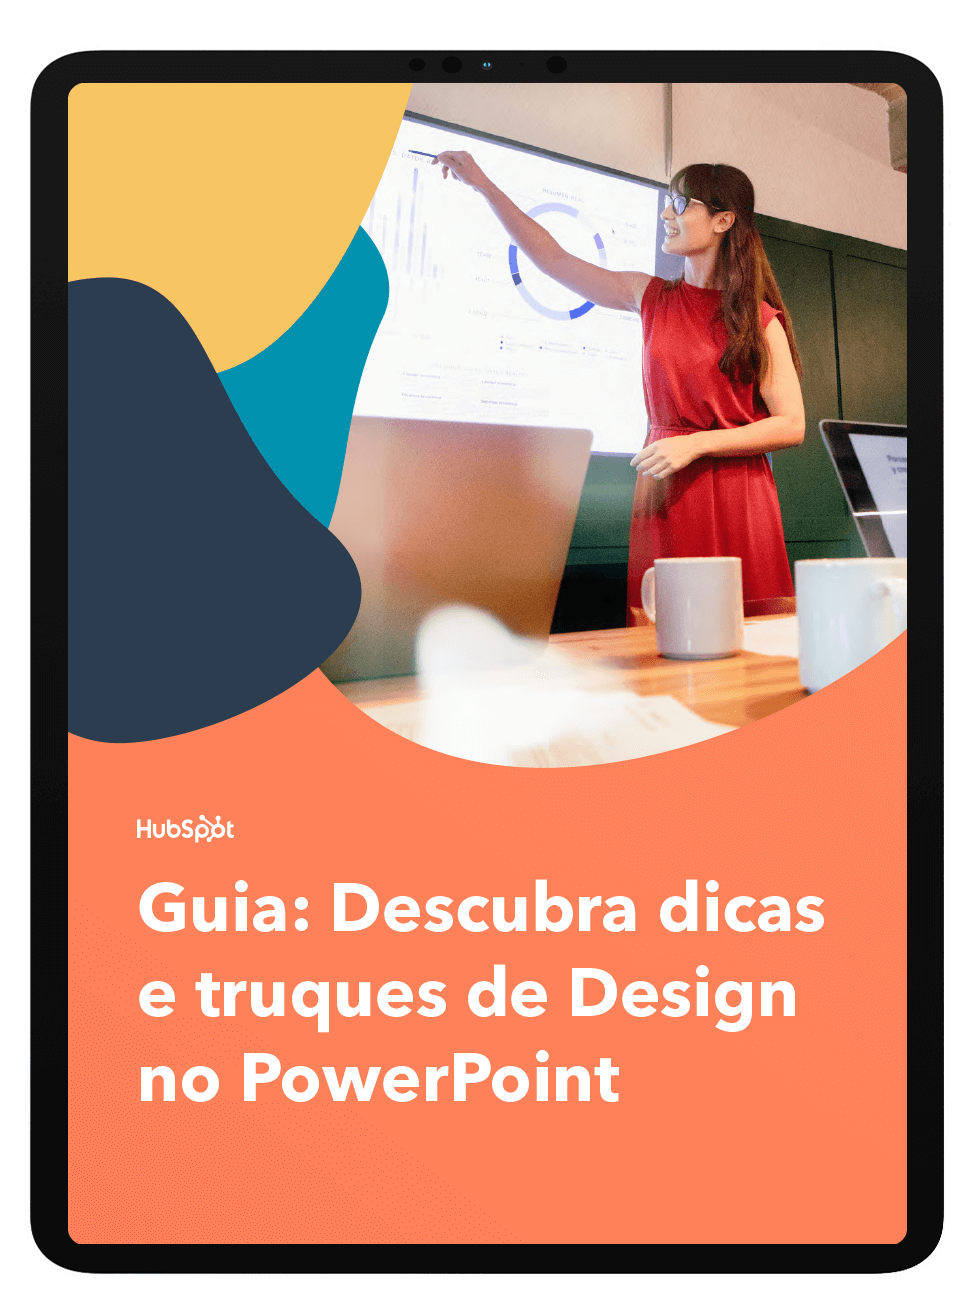 Mockup_Descubra-dicas-e-truques-de-Design-no-PowerPoint